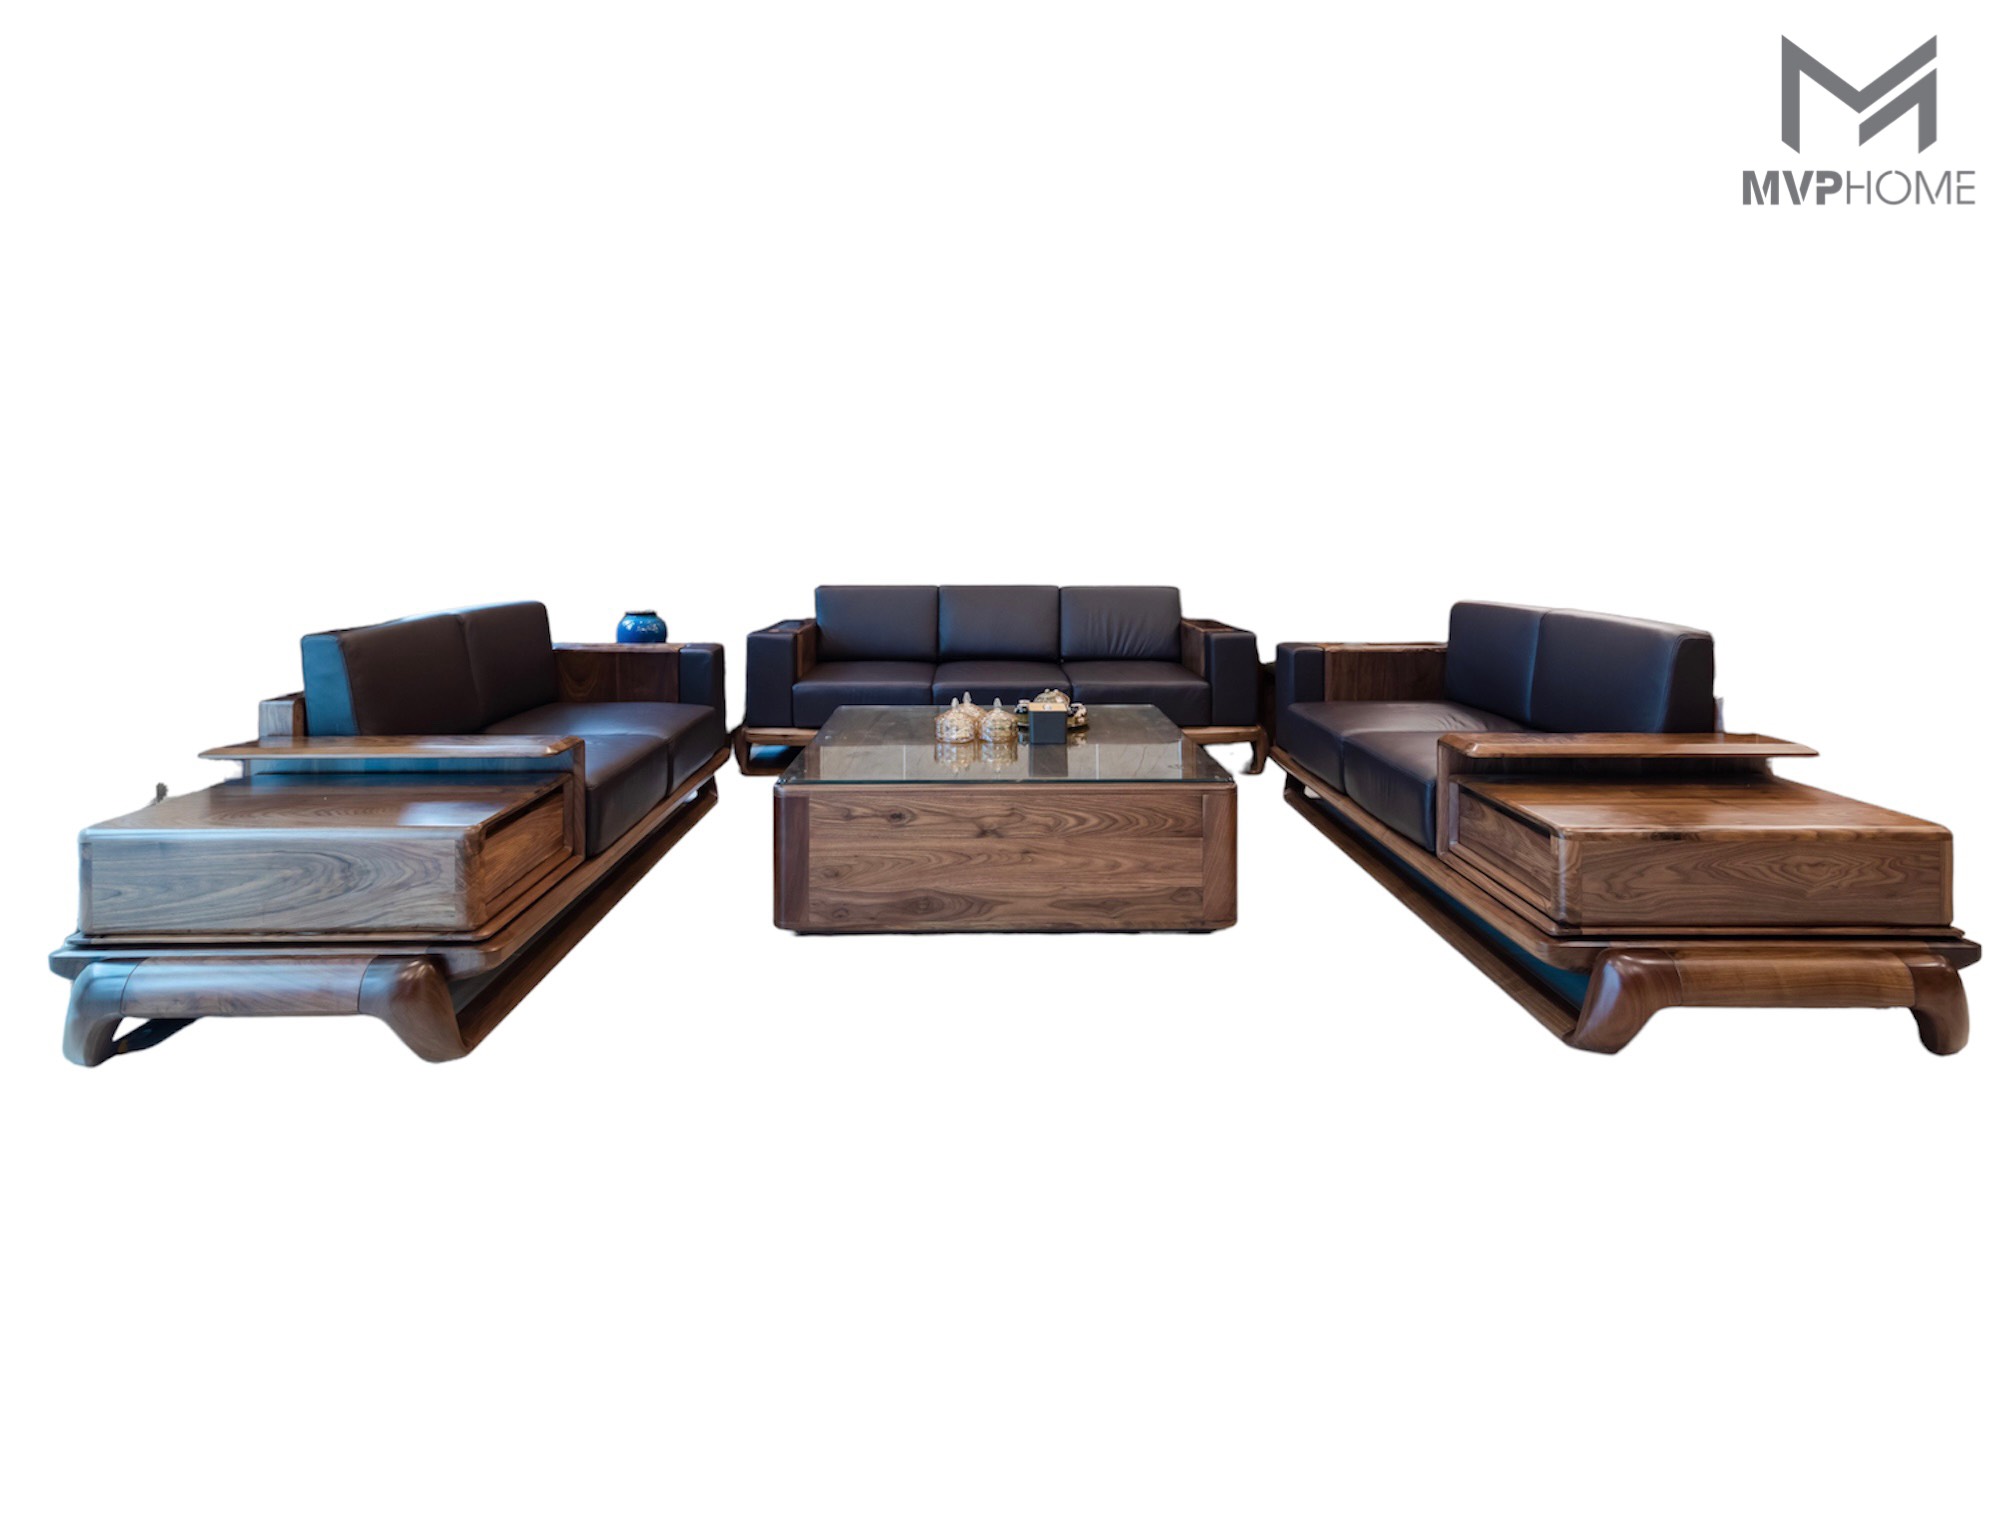 Mua sofa gỗ kiểu hiện đại để tạo không gian sống động, mới mẻ và hiện đại. Các mẫu sofa gỗ tại năm 2024 được thiết kế tinh tế, độc đáo, với chất liệu gỗ tự nhiên tỉ mỉ, tặng kèm nhiều quà tặng giá trị. Một chiếc sofa gỗ kiểu hiện đại không chỉ là nơi nghỉ ngơi mà còn phải làm cho không gian sống của bạn thêm phần đáng yêu.